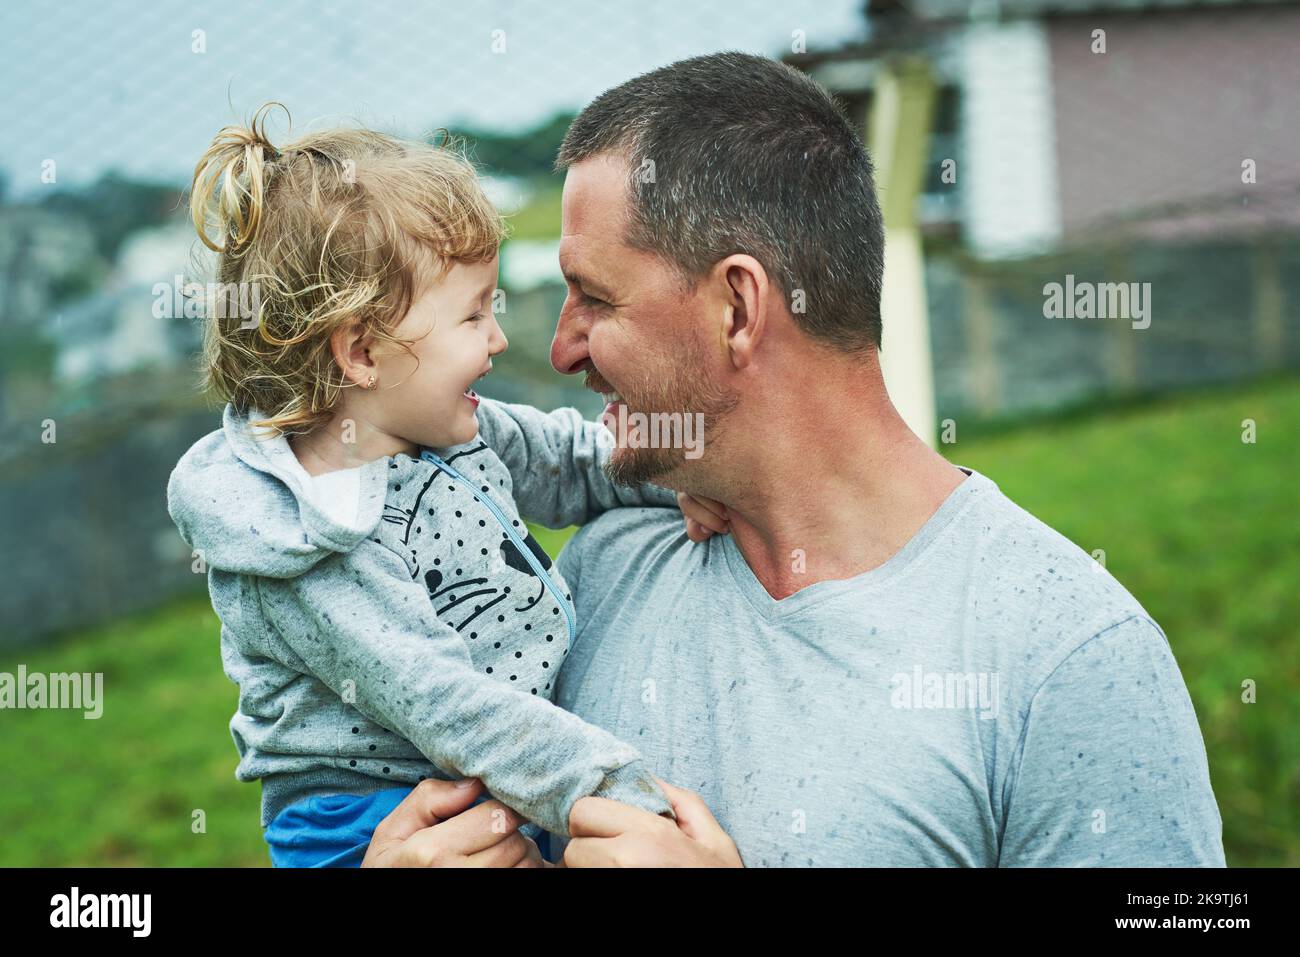 Fille et père amour. Une petite fille joyeuse étant tenue par son père pendant qu'ils regardent les autres yeux dehors pendant un jour pluvieux. Banque D'Images